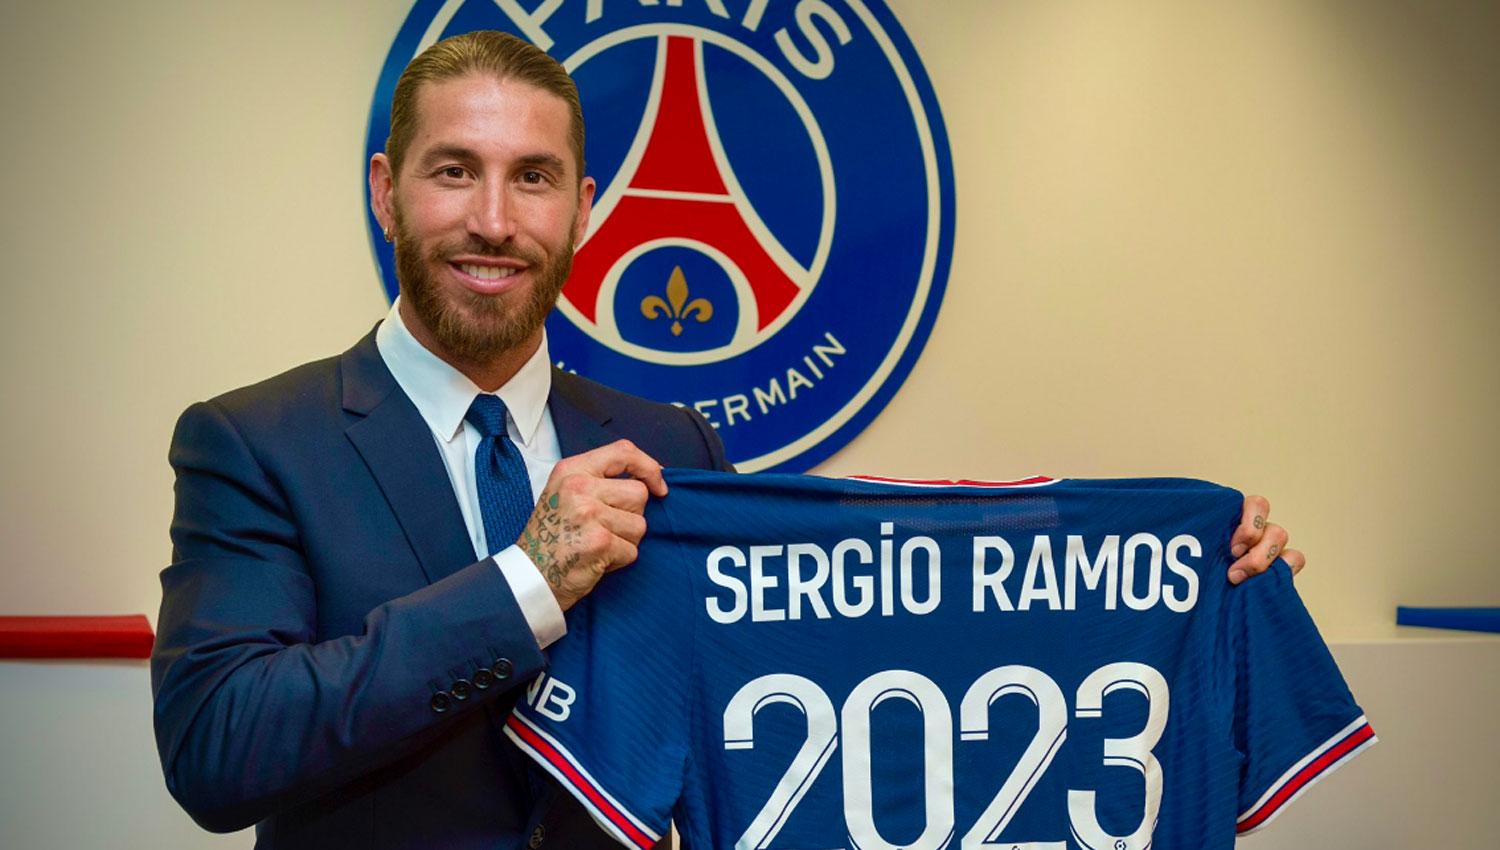 NUEVO DESAFÍO. Sergio Ramos conducirá ahora la defensa de PSG, que sueña con conquistar europa de la mano del español.